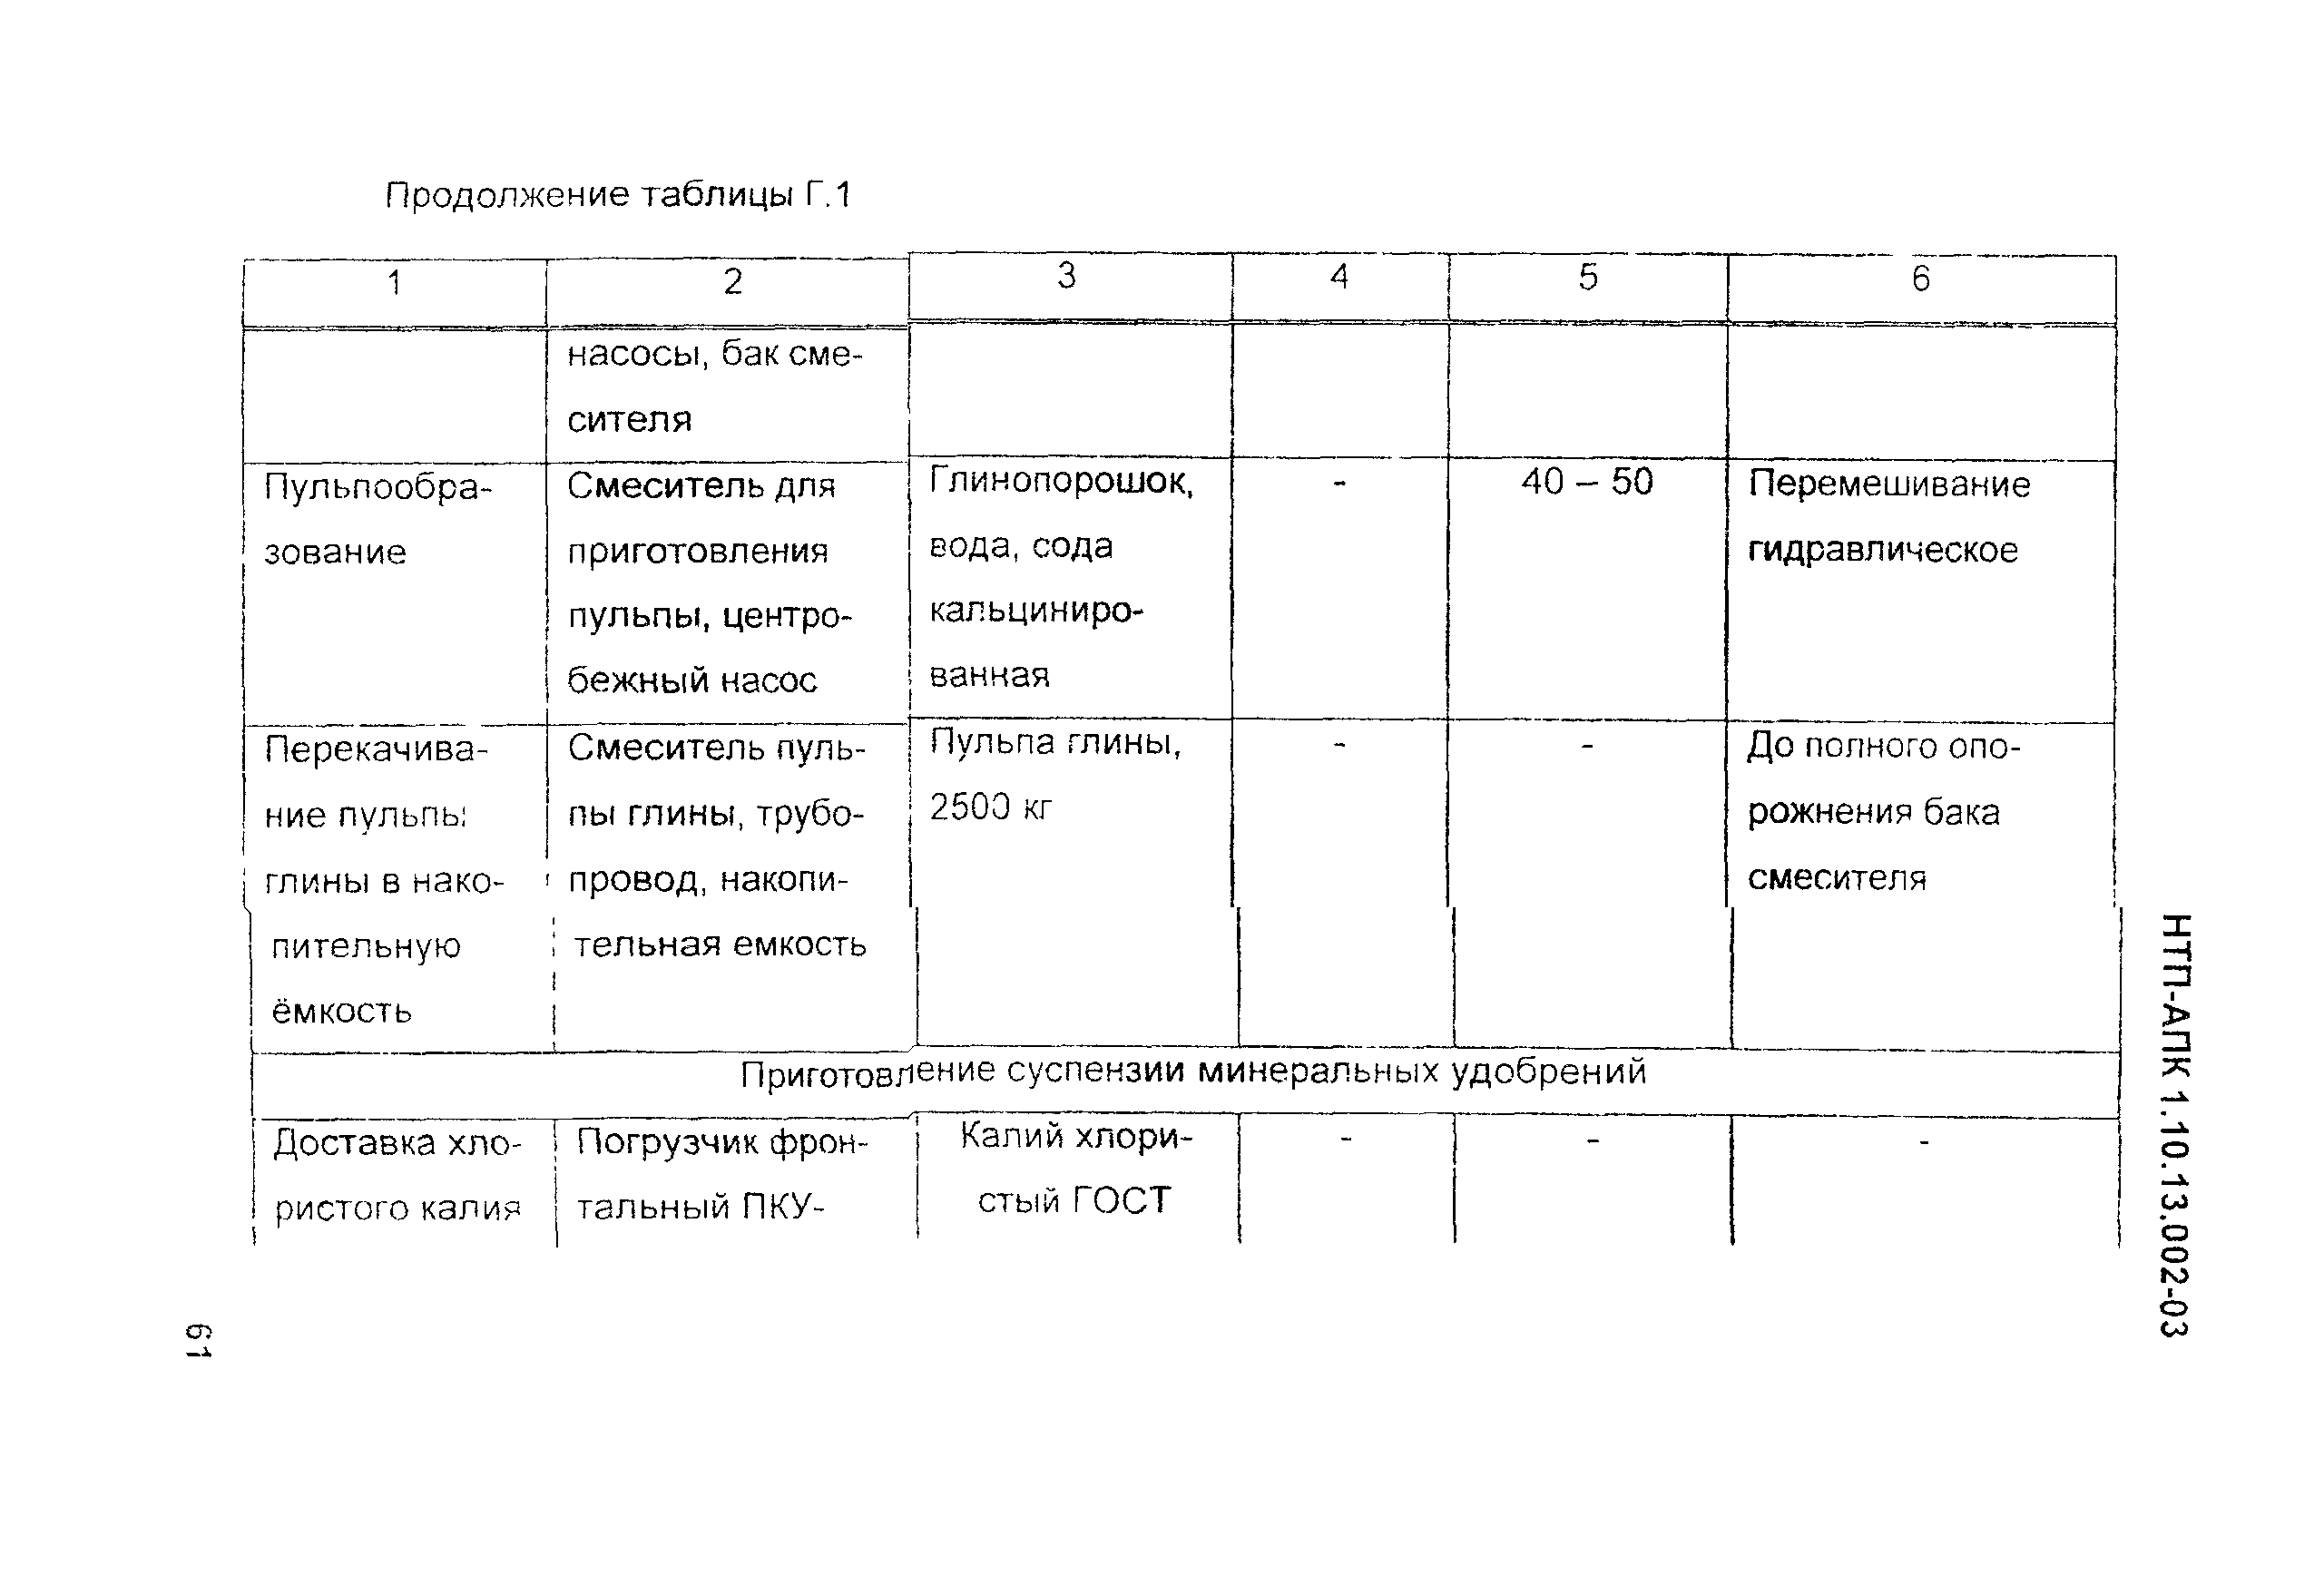 НТП-АПК 1.10.13.002-03